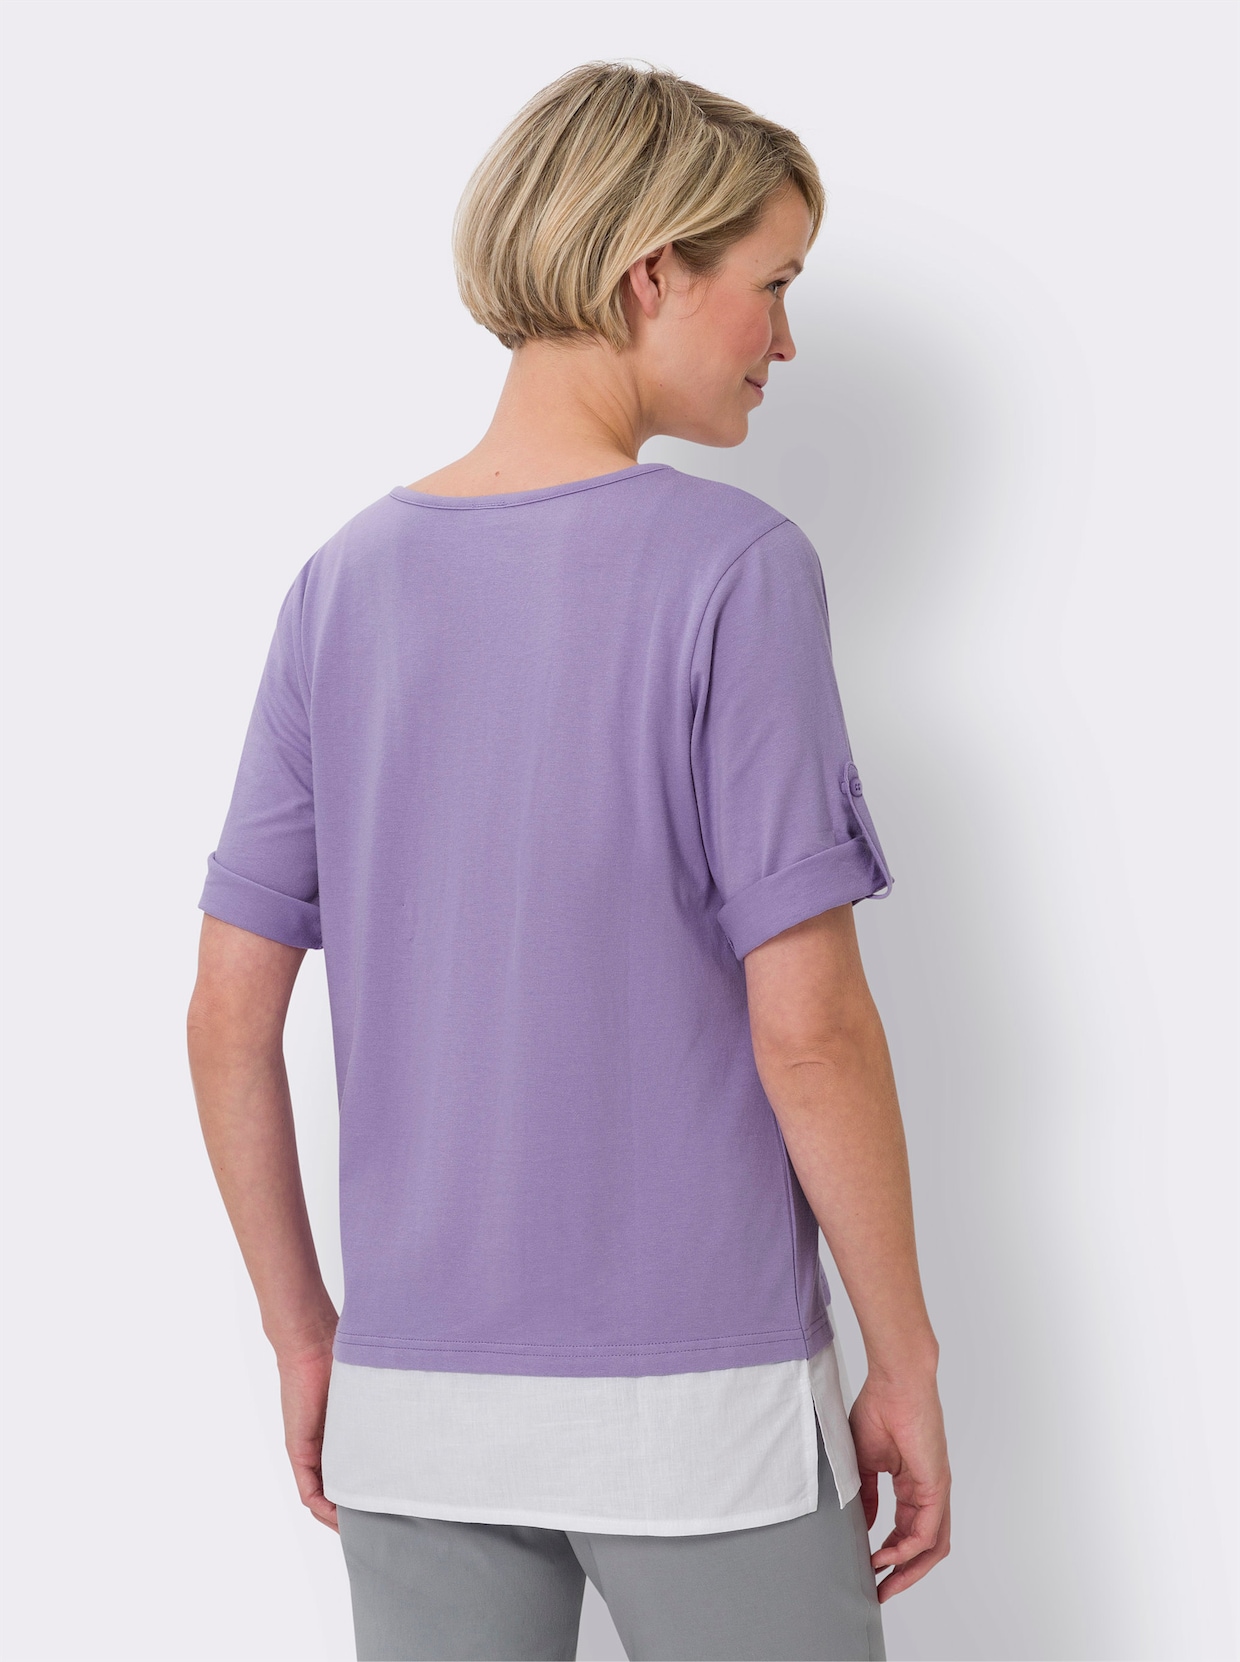 2-in-1-Shirt - lavendel-weiß